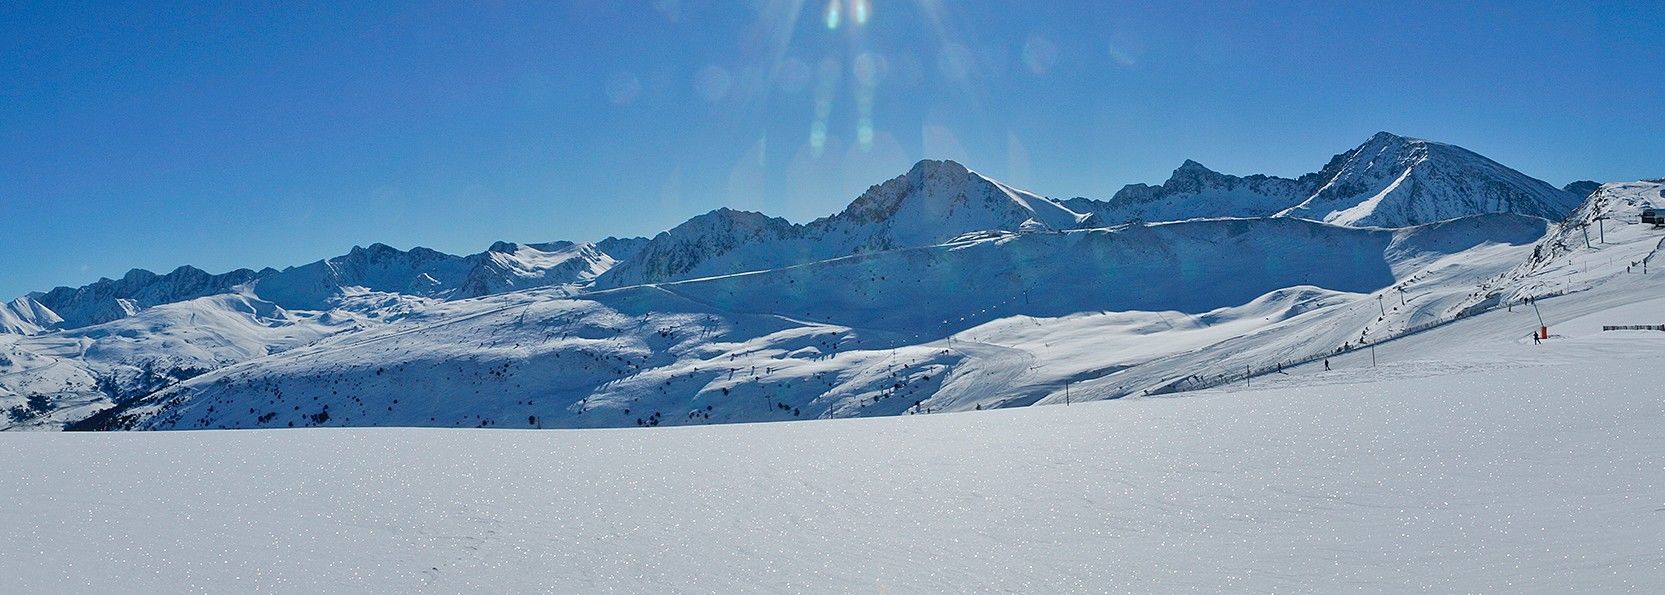 Estación de esquí Grandvalira - GrandValira Ski